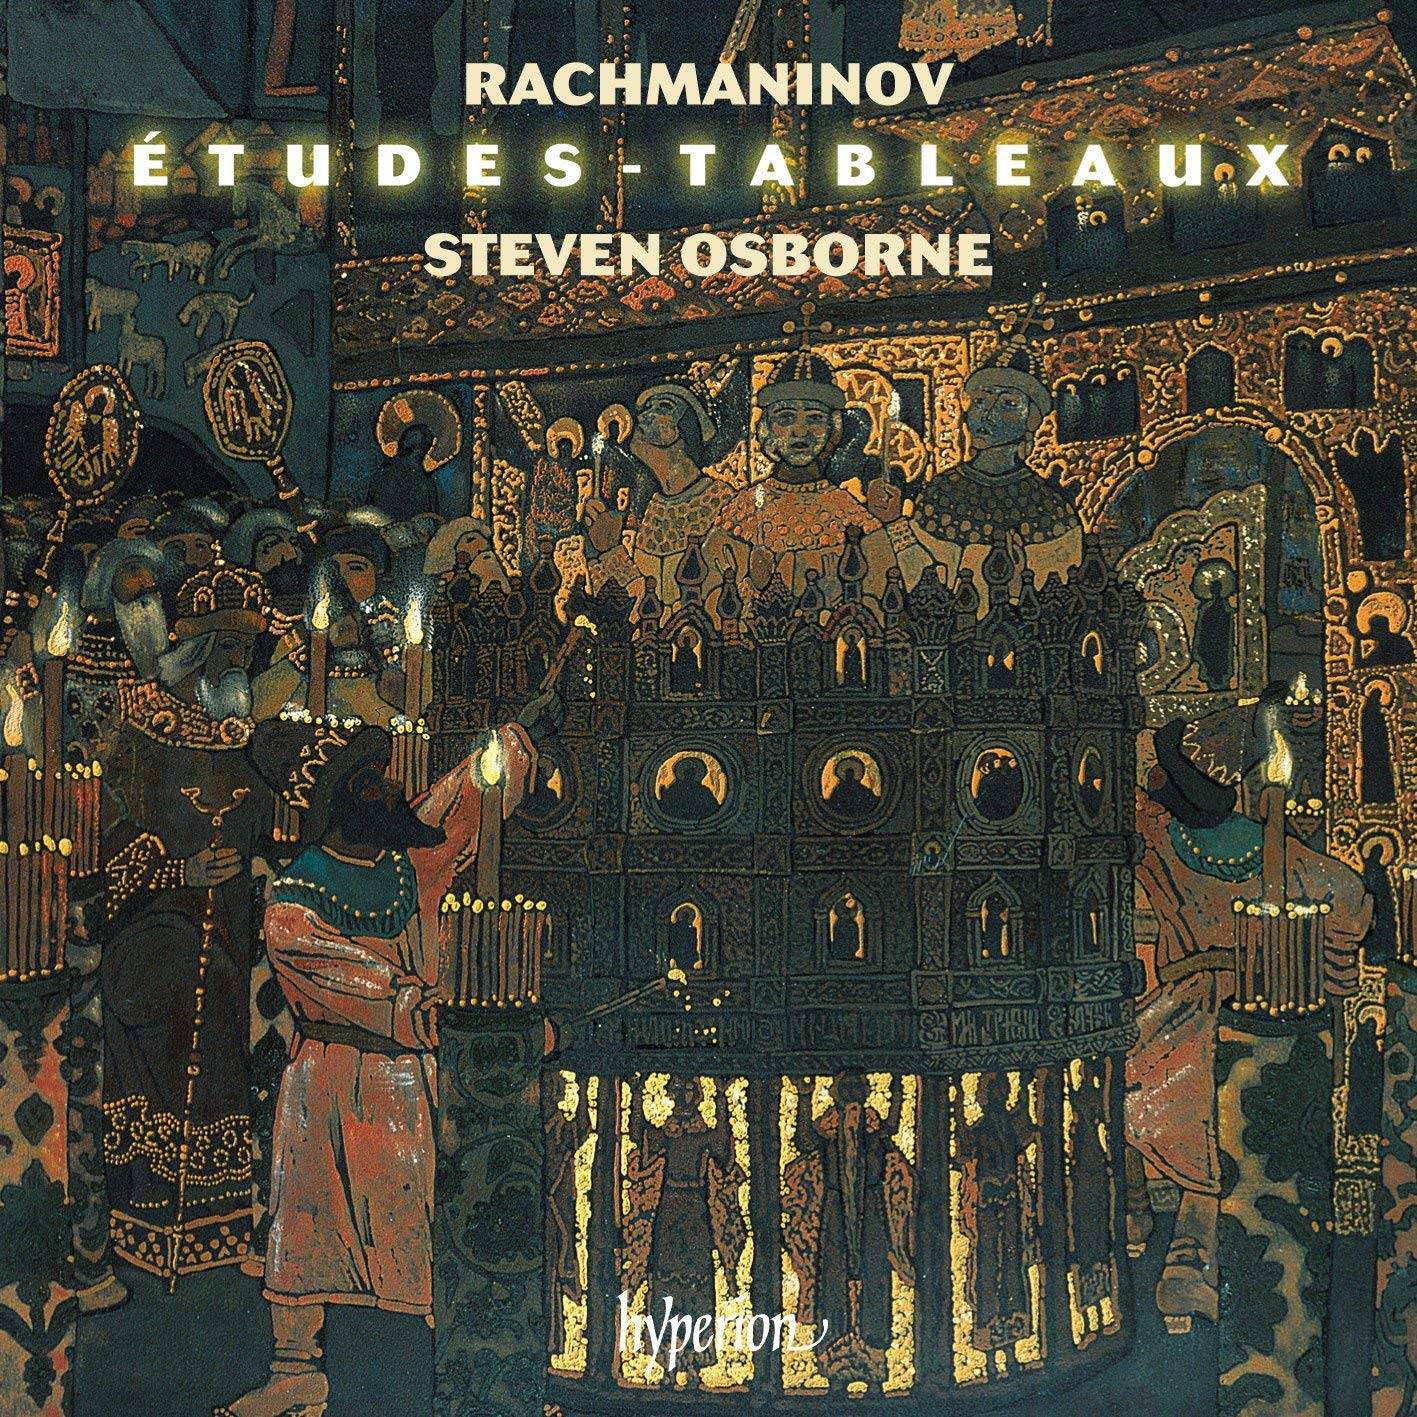 Steven Osborne - Rachmaninoff: Etudes-tableaux (2018) [FLAC 24bit/96kHz]